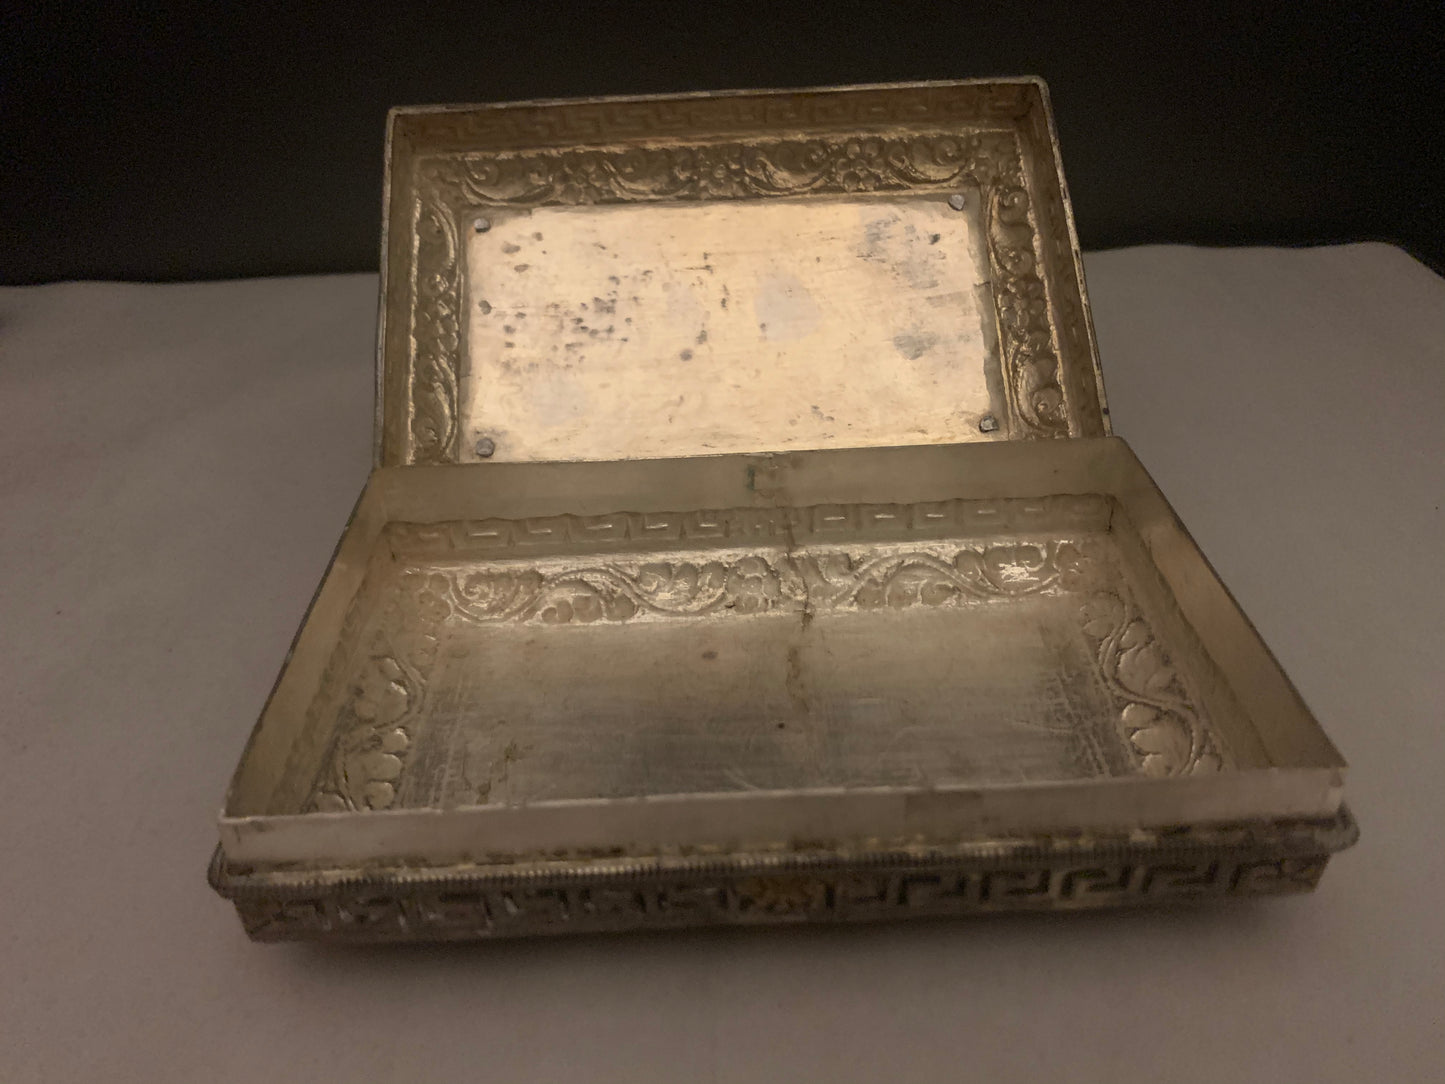 A Bhutanese silver box